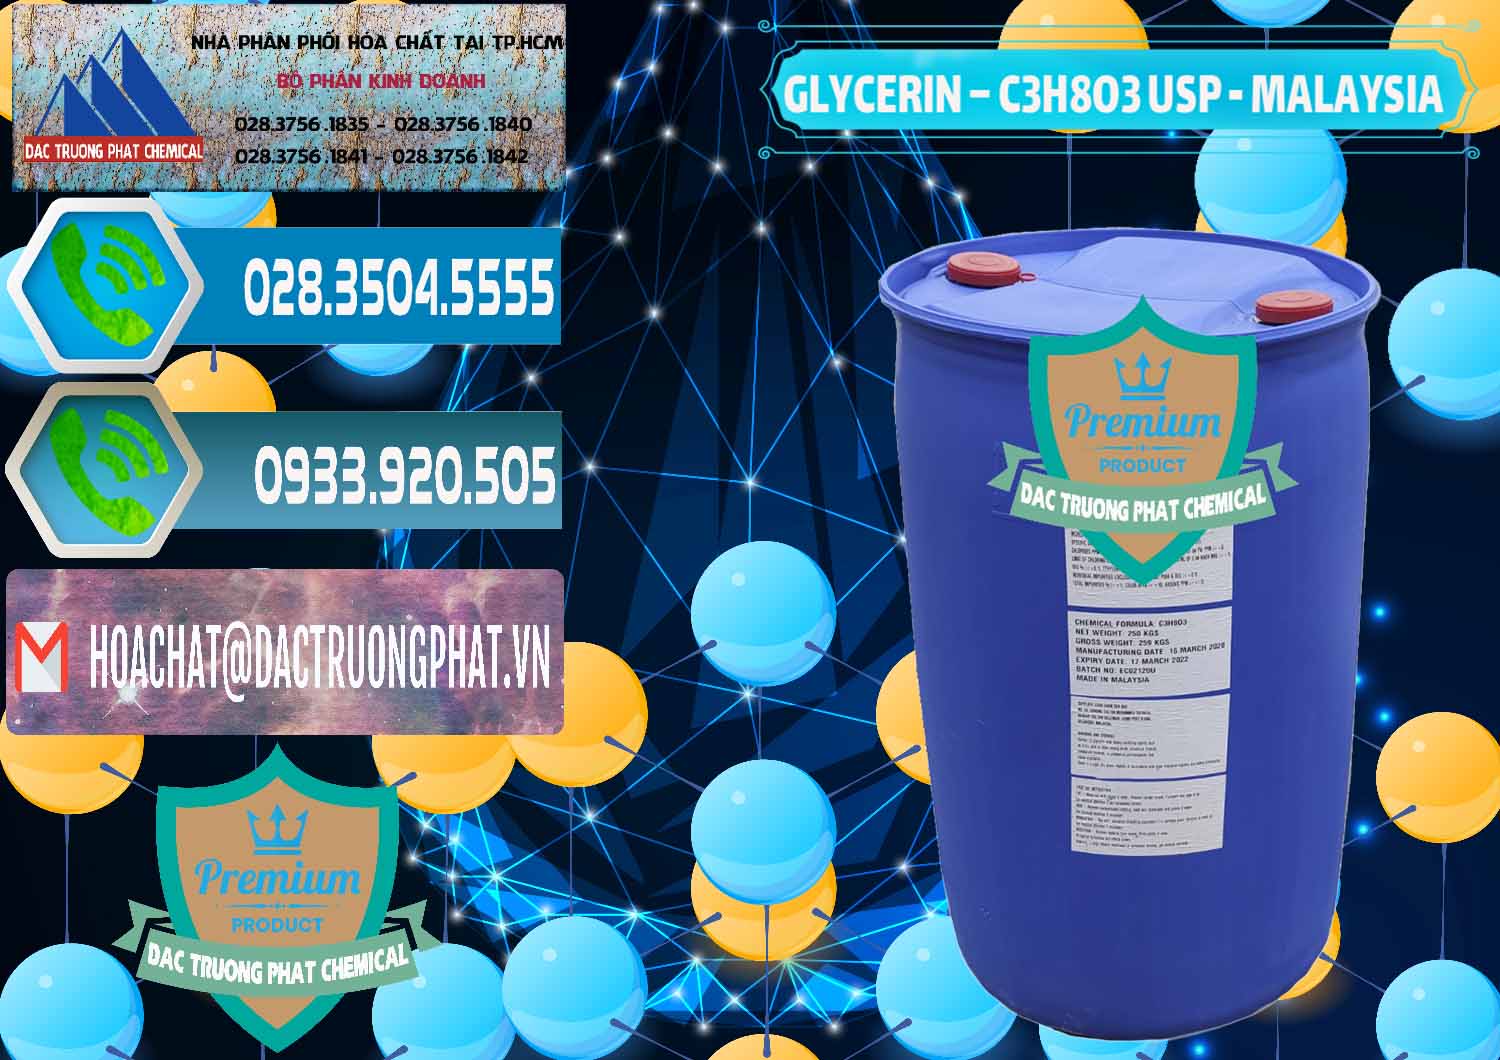 Cty chuyên bán - cung ứng Glycerin – C3H8O3 USP Malaysia - 0233 - Phân phối & nhập khẩu hóa chất tại TP.HCM - congtyhoachat.net